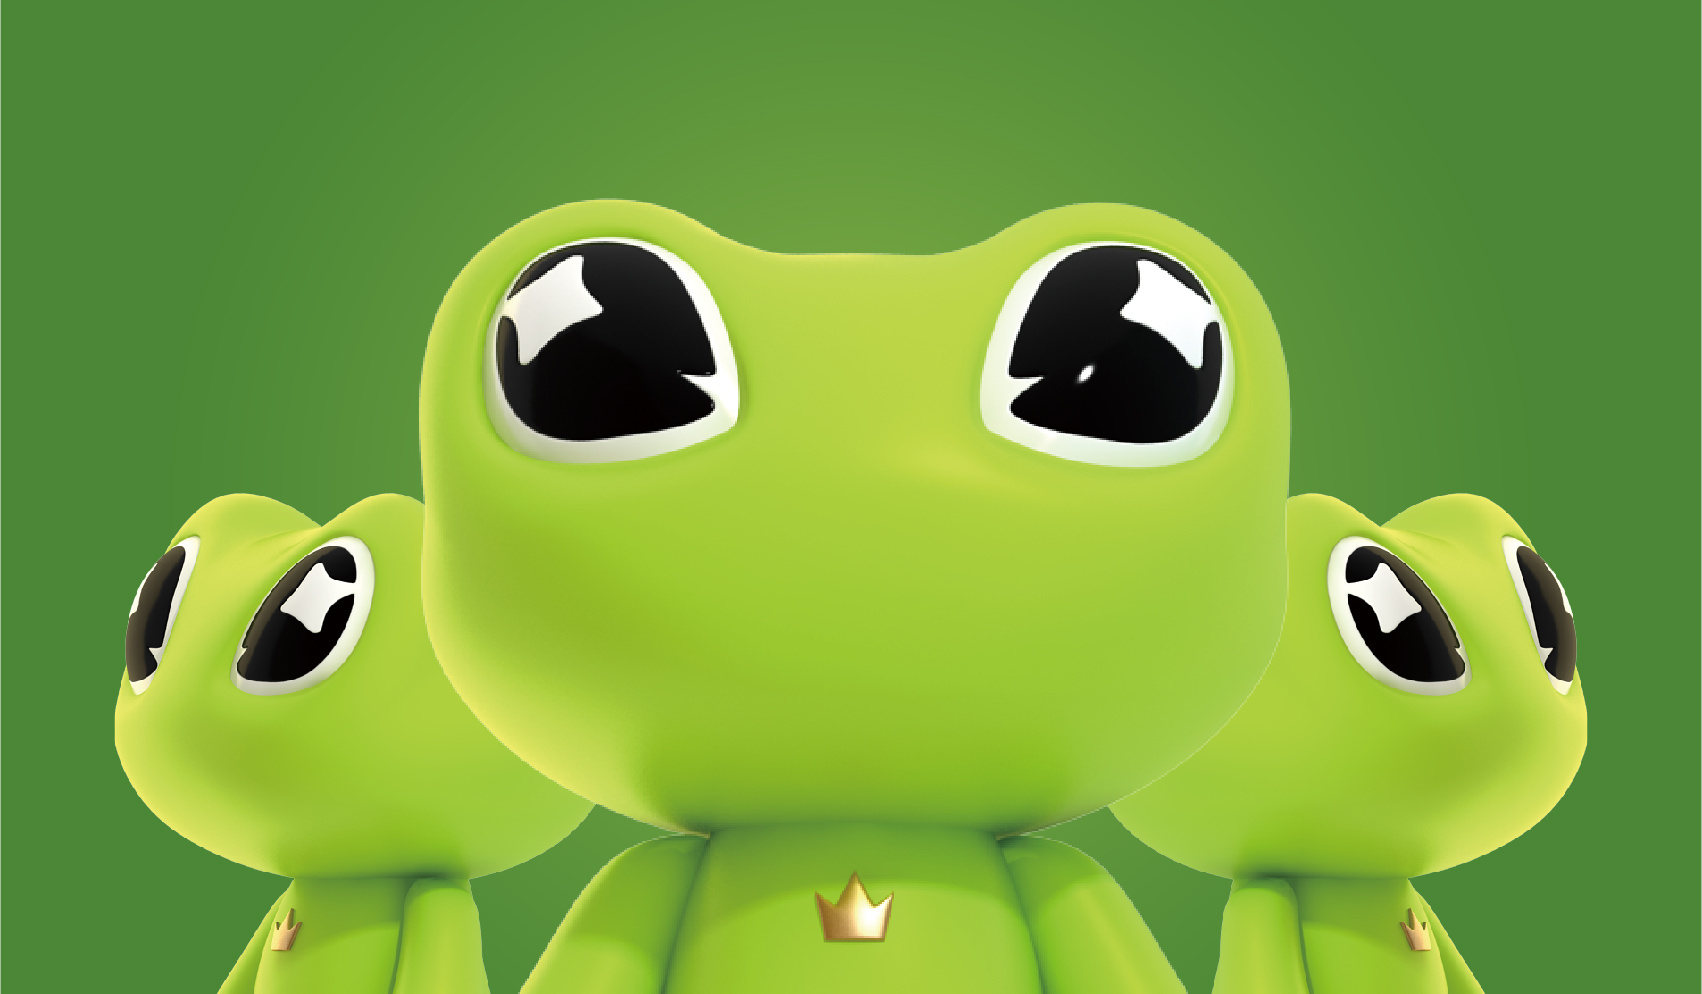 青蛙可膨胀的池玩具 库存图片. 图片 包括有 安全性, 晴朗, 青蛙, 内在, 季节性, 生活, 子项, 季节 - 868801